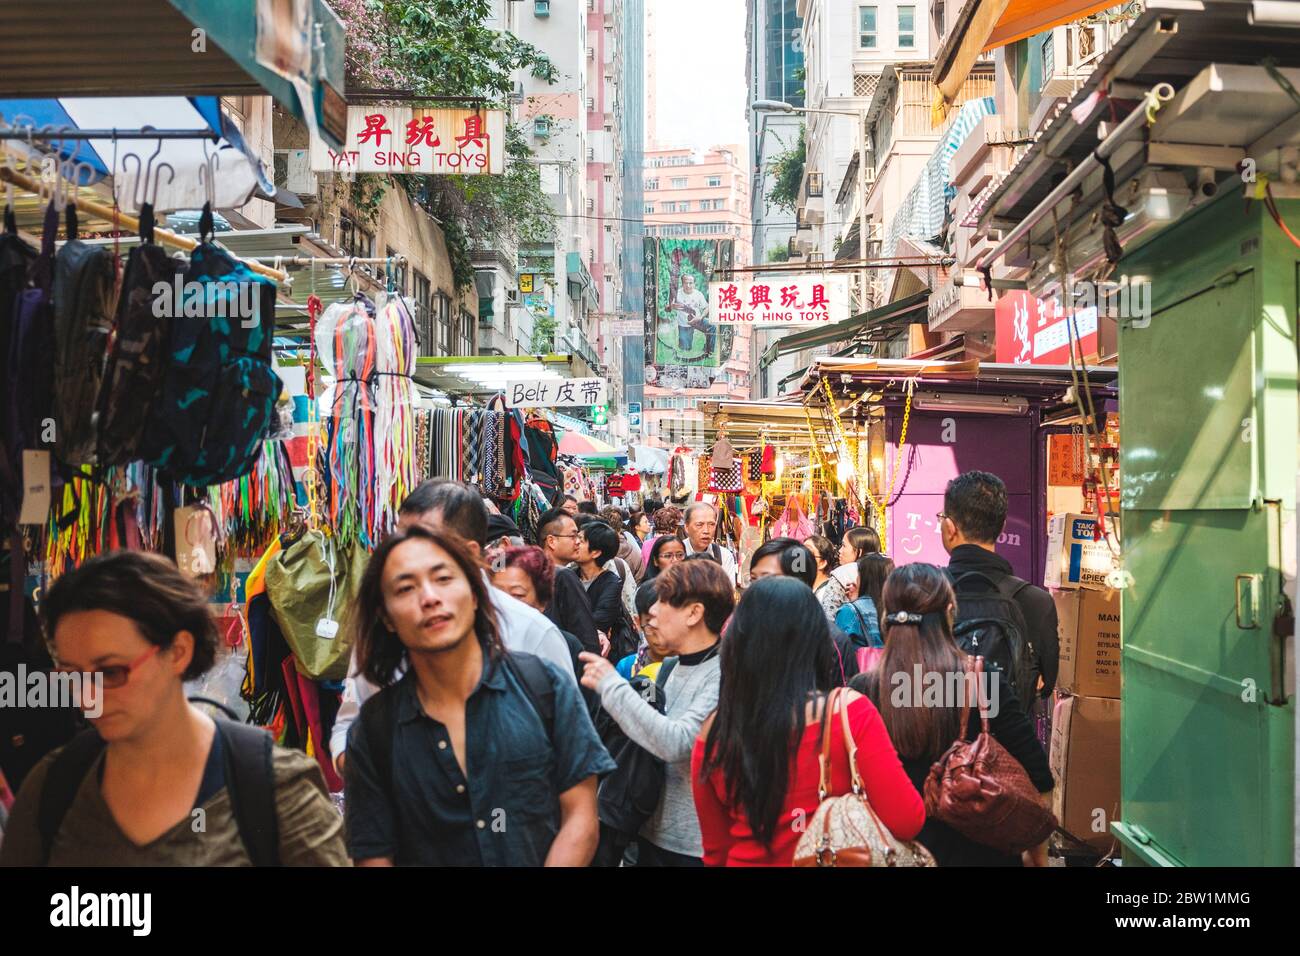 Hong Kong - November, 2019: Crowd of asian people on street market in Hong Kong, China Stock Photo